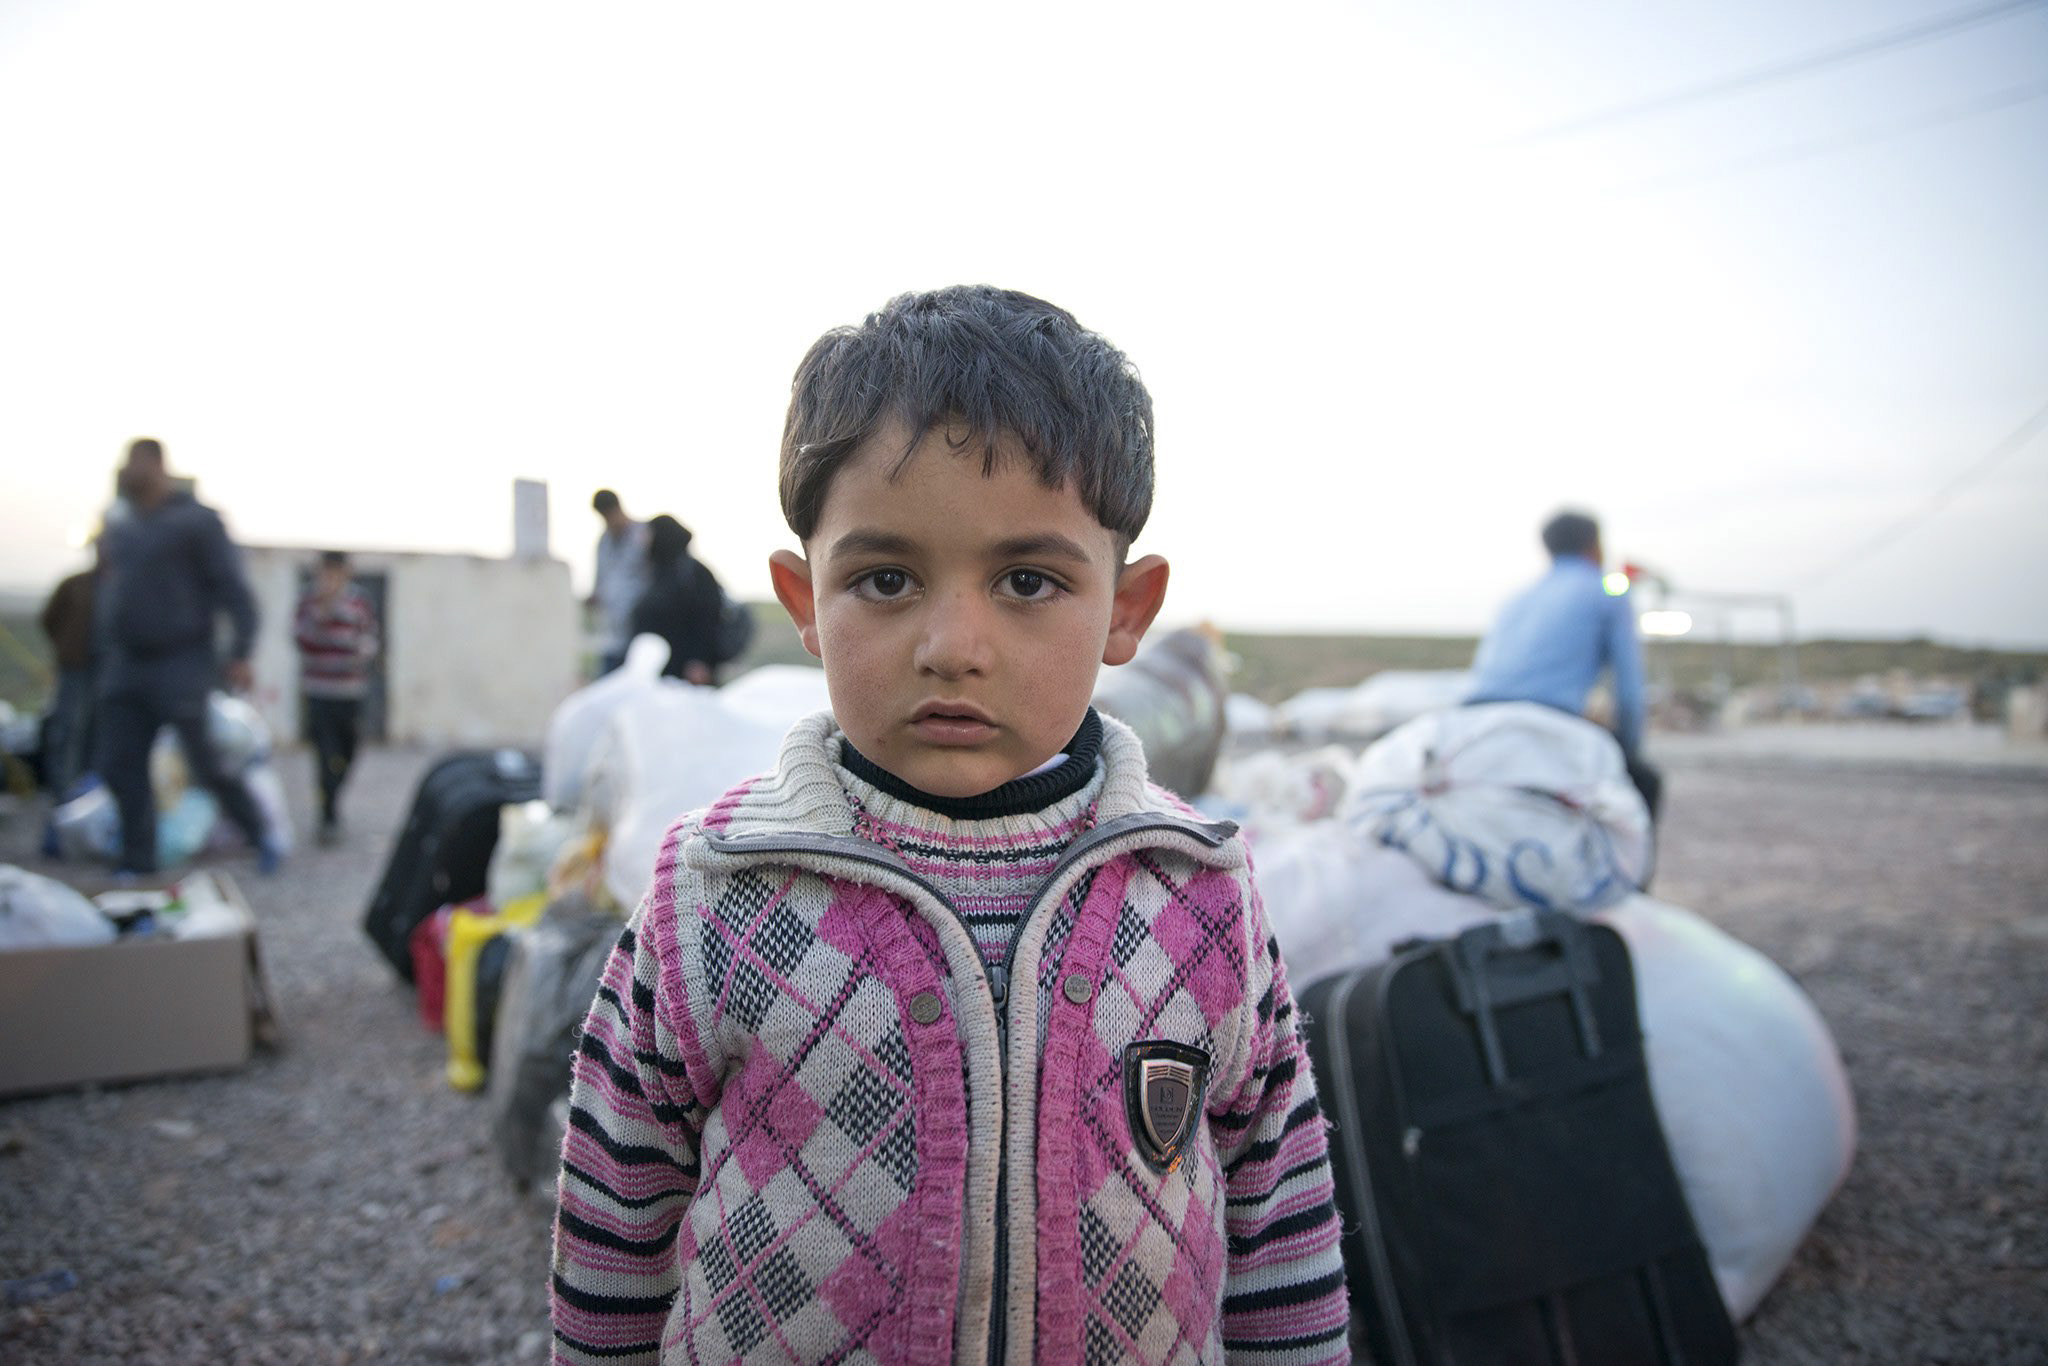 联合国难民署高级专员就叙利亚危机向安全理事会提出警告